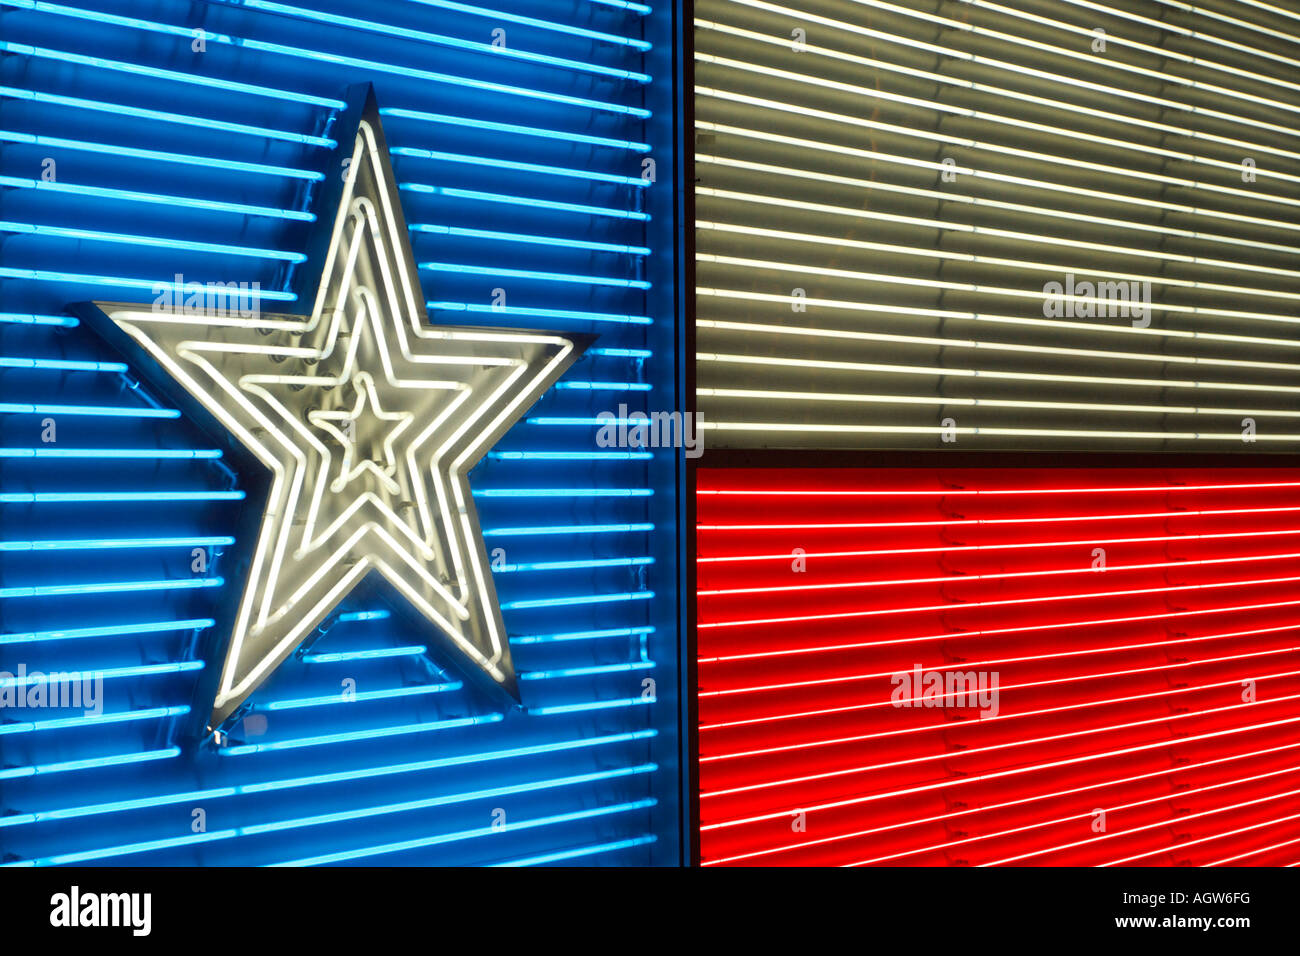 Neon Texas flag Stock Photo